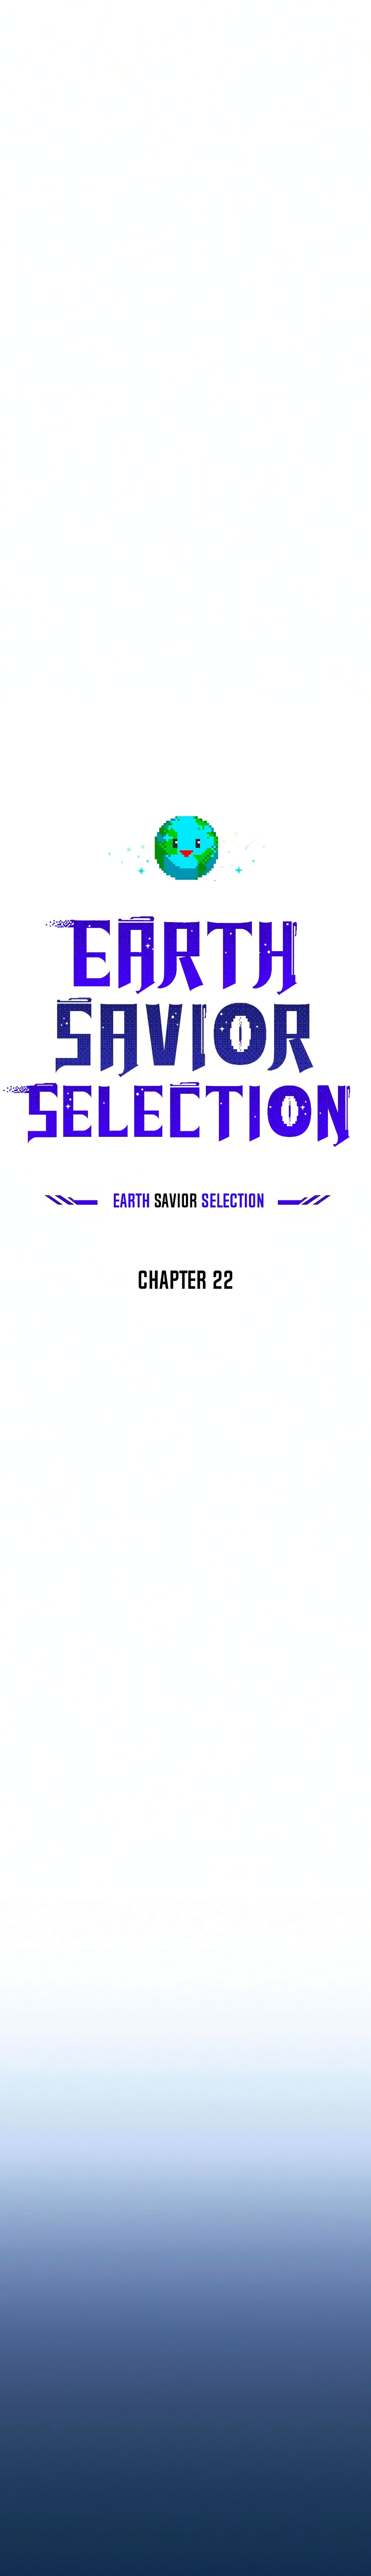 The Earth Savior Selection 22 11